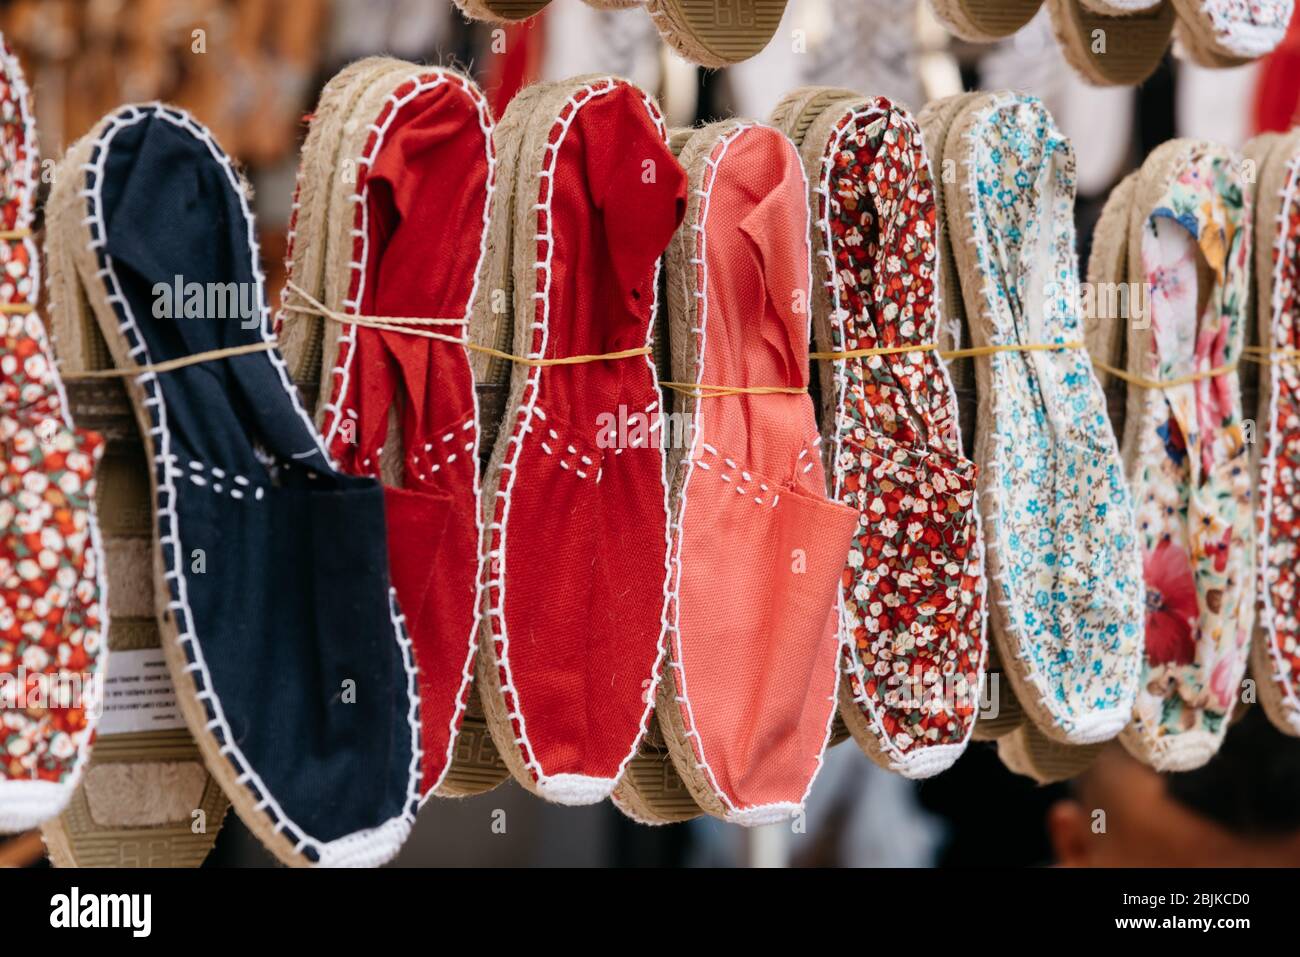 Bunte spanische handgemachte Seil soled Sandalen oder Espadrilles in  Marktstand Stockfotografie - Alamy